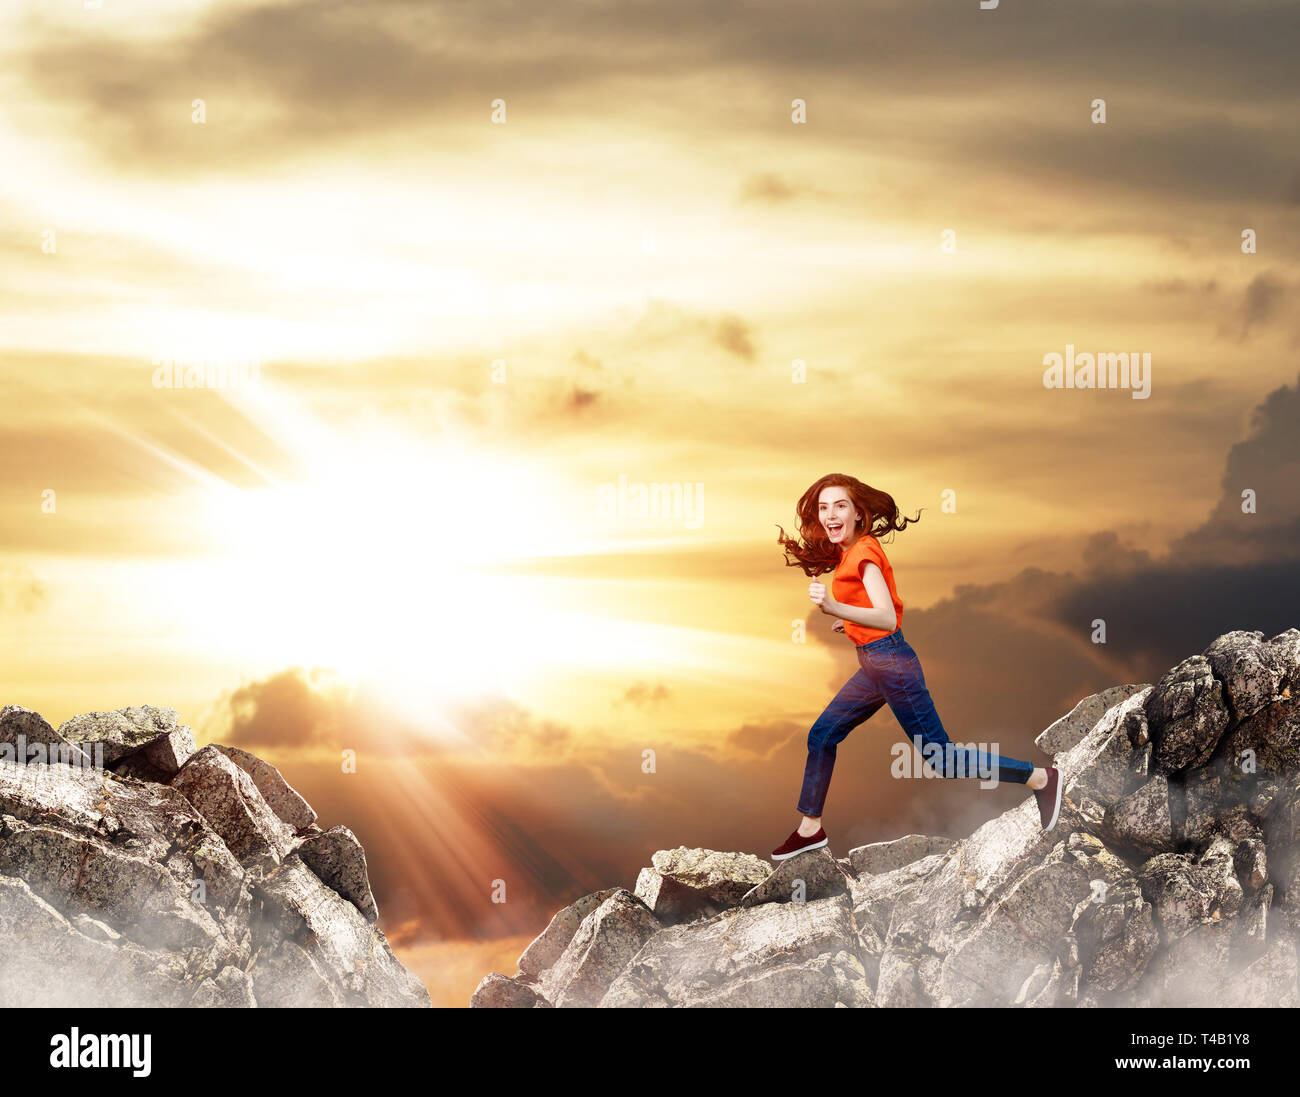 Femme rousse saute sur falaise sur fond de ciel bleu. Banque D'Images